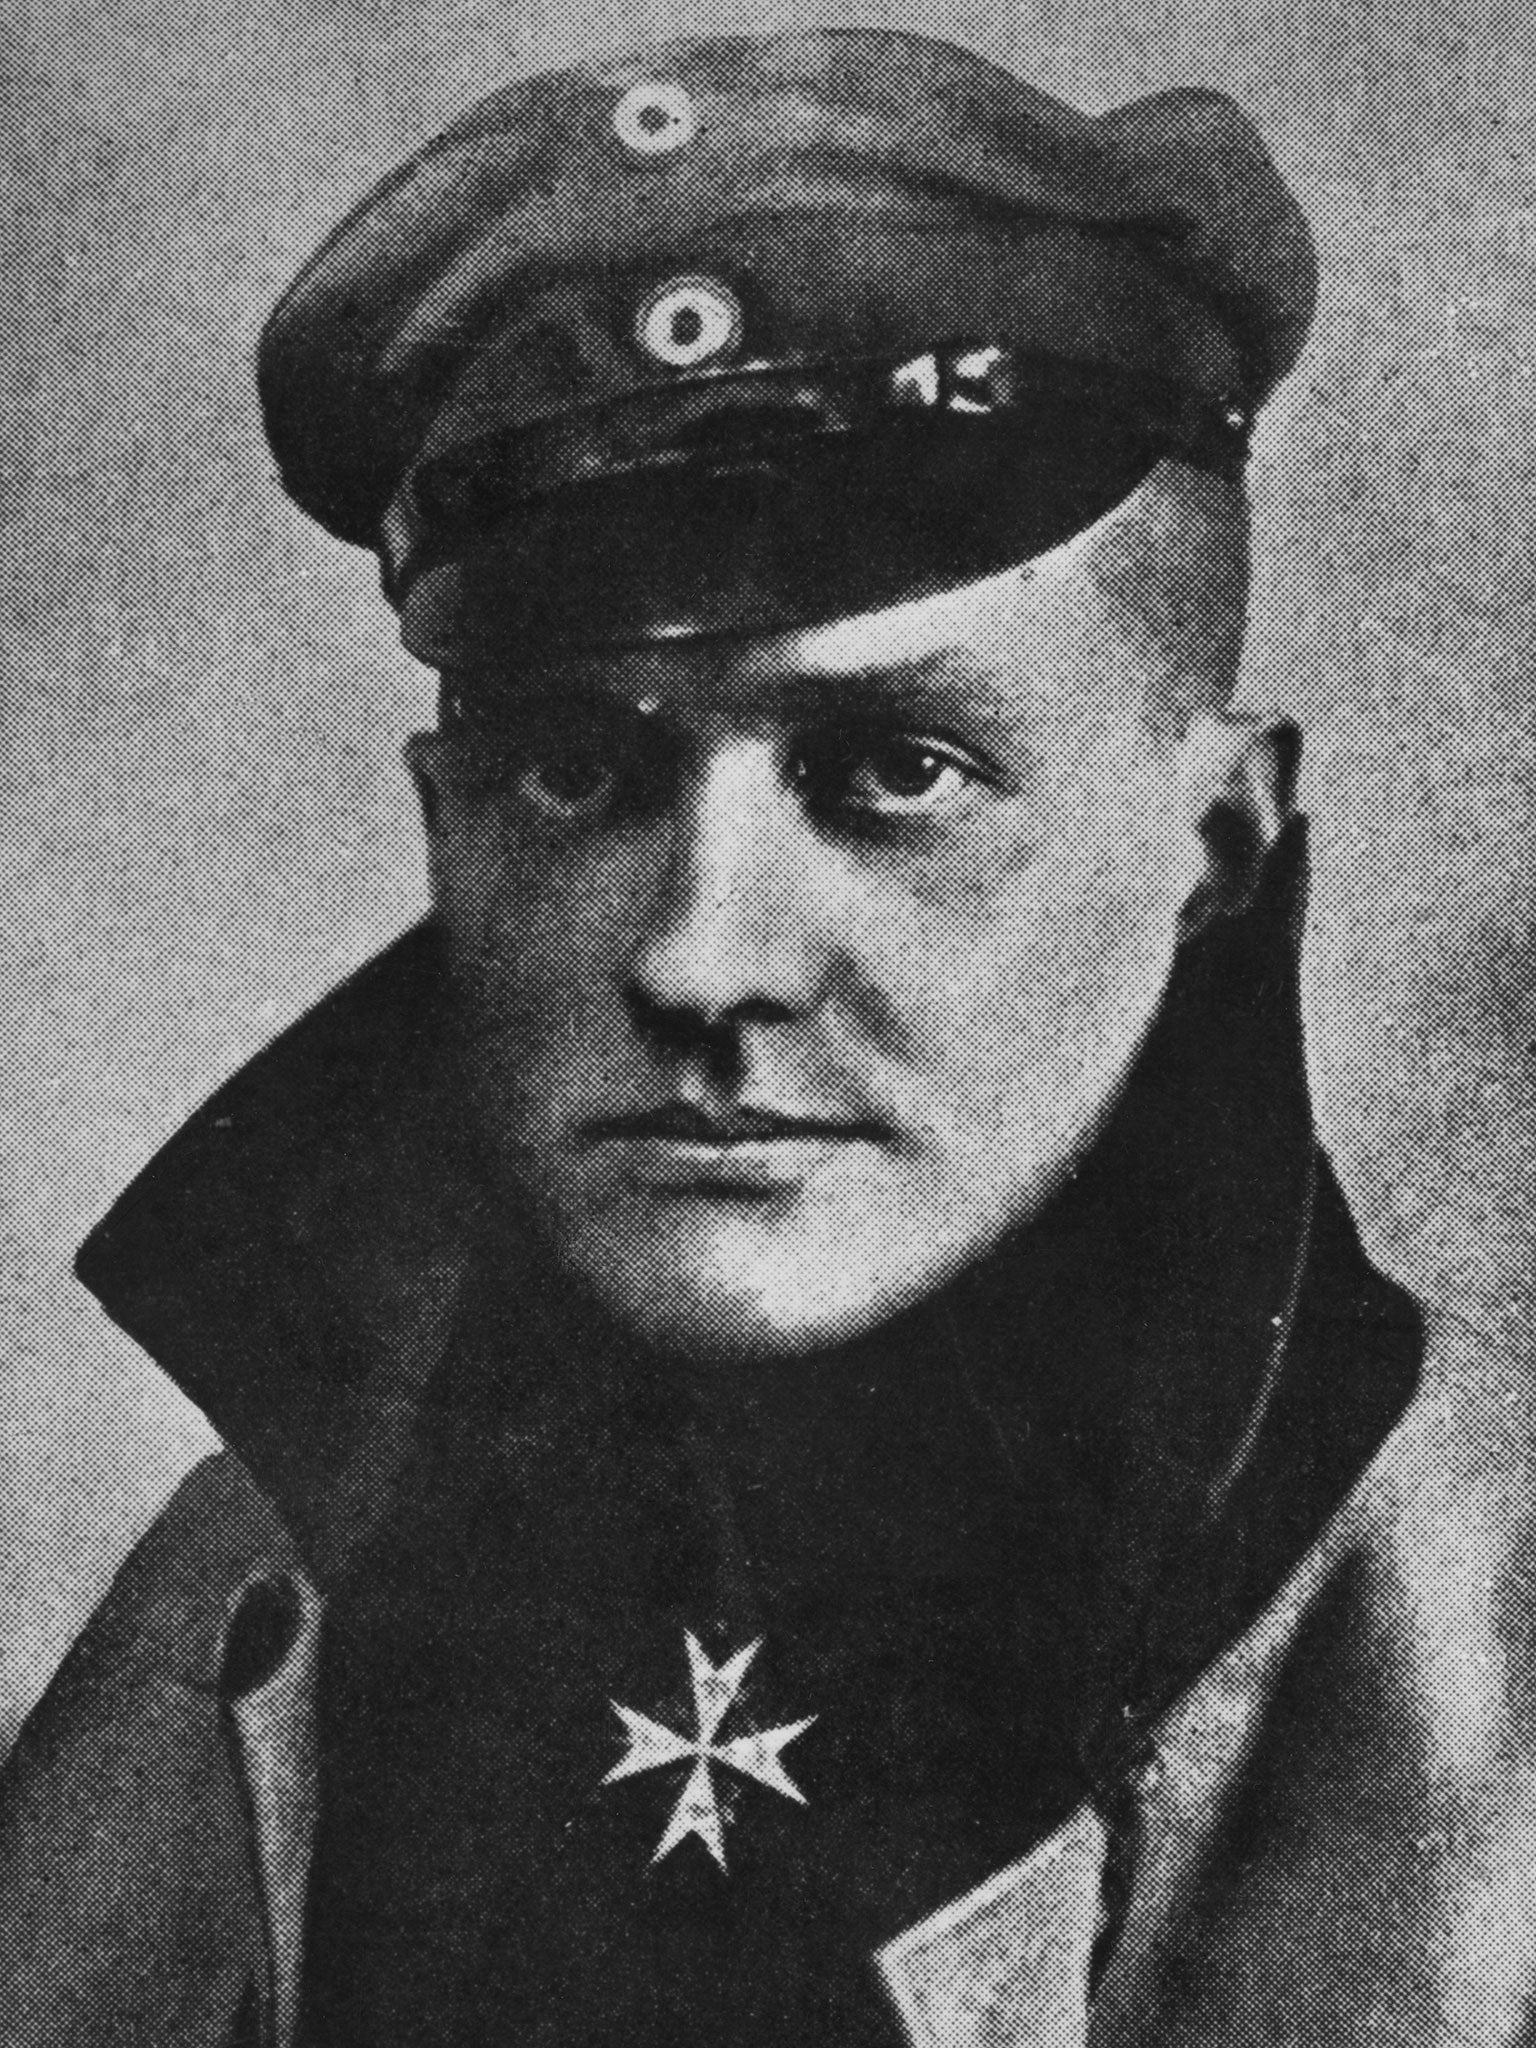 The German air ace Baron Manfred von Richthofen